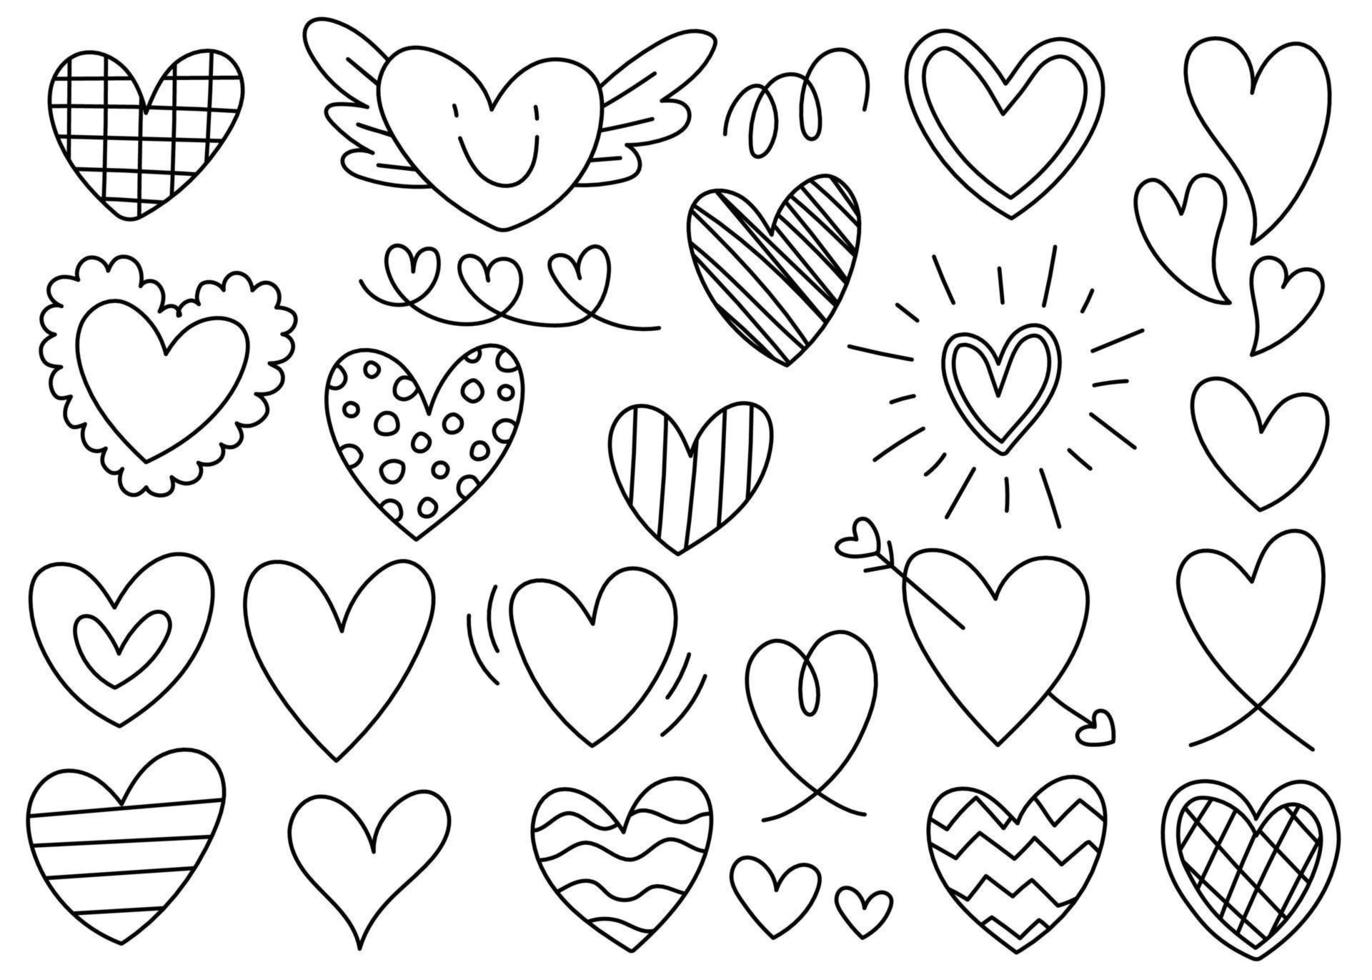 sött hjärta element dekoration alla hjärtans dag kärlek romantisk svart linje kontur form klotter tecknad hand ritning skiss vektor illustration pack set bunt samling